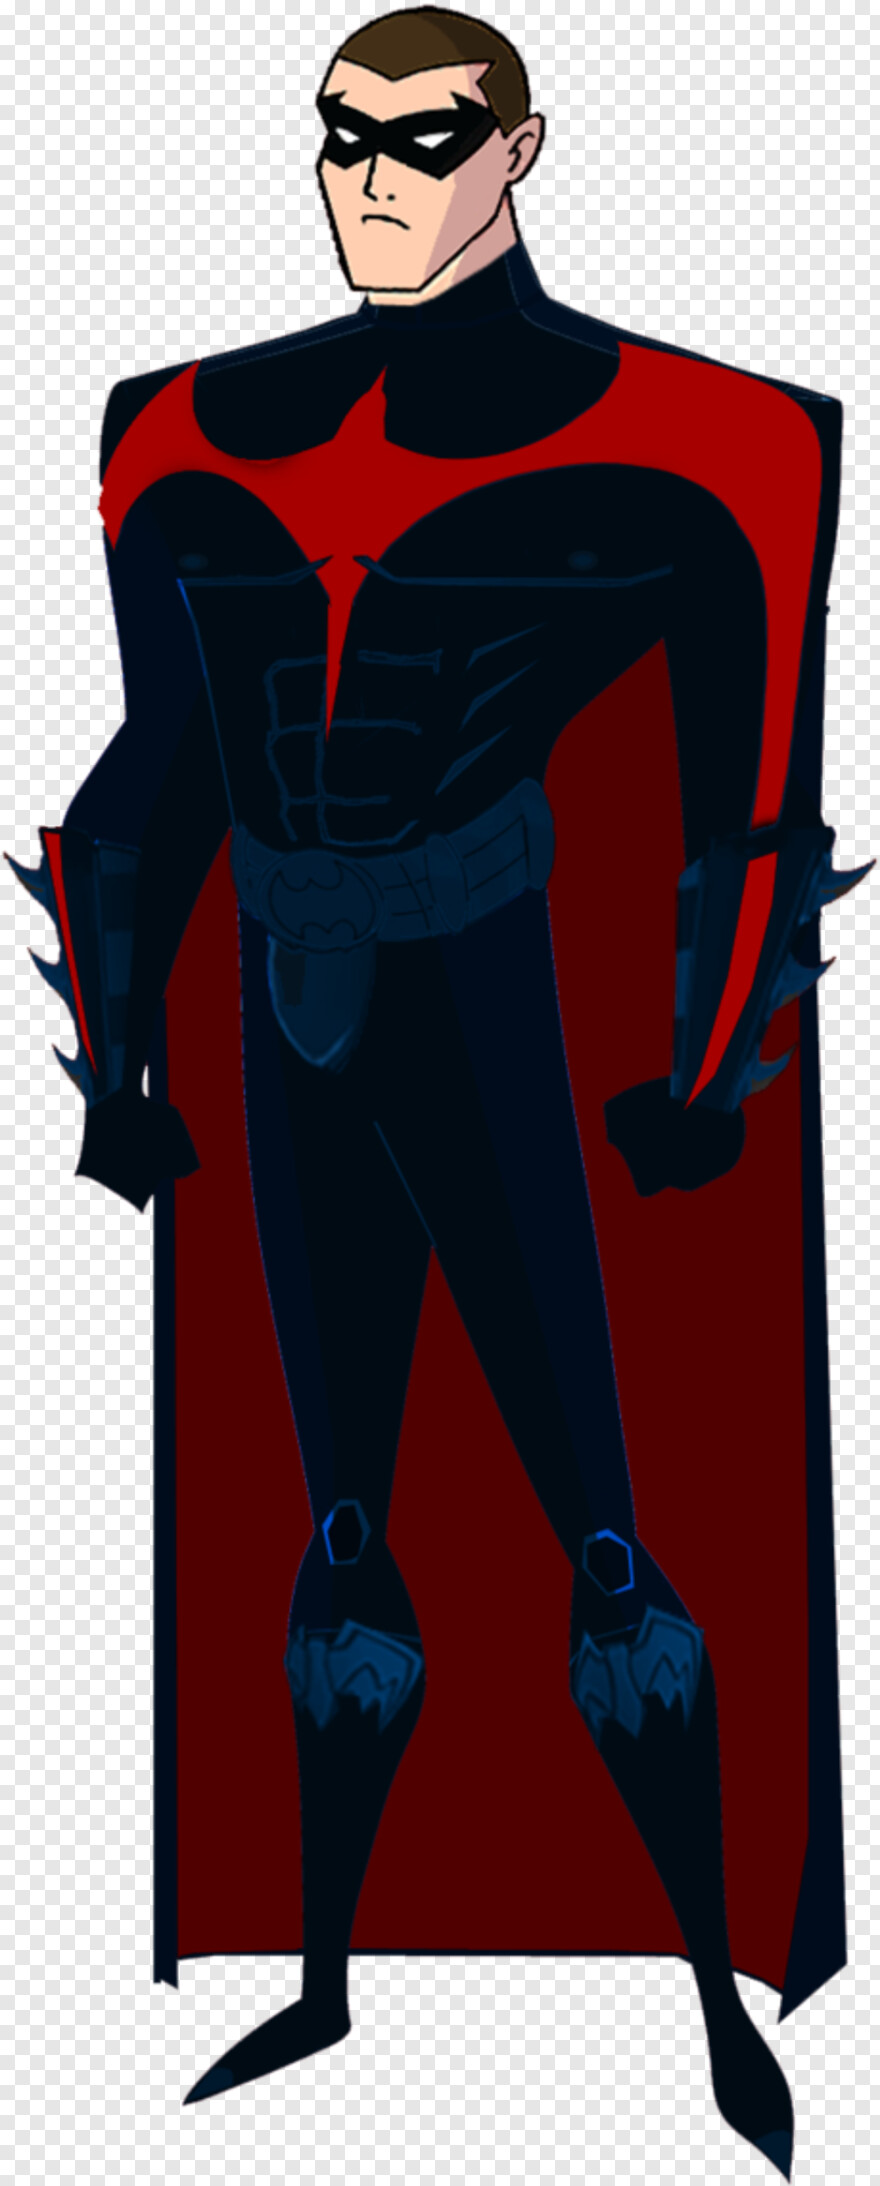 superhero-silhouette # 521553